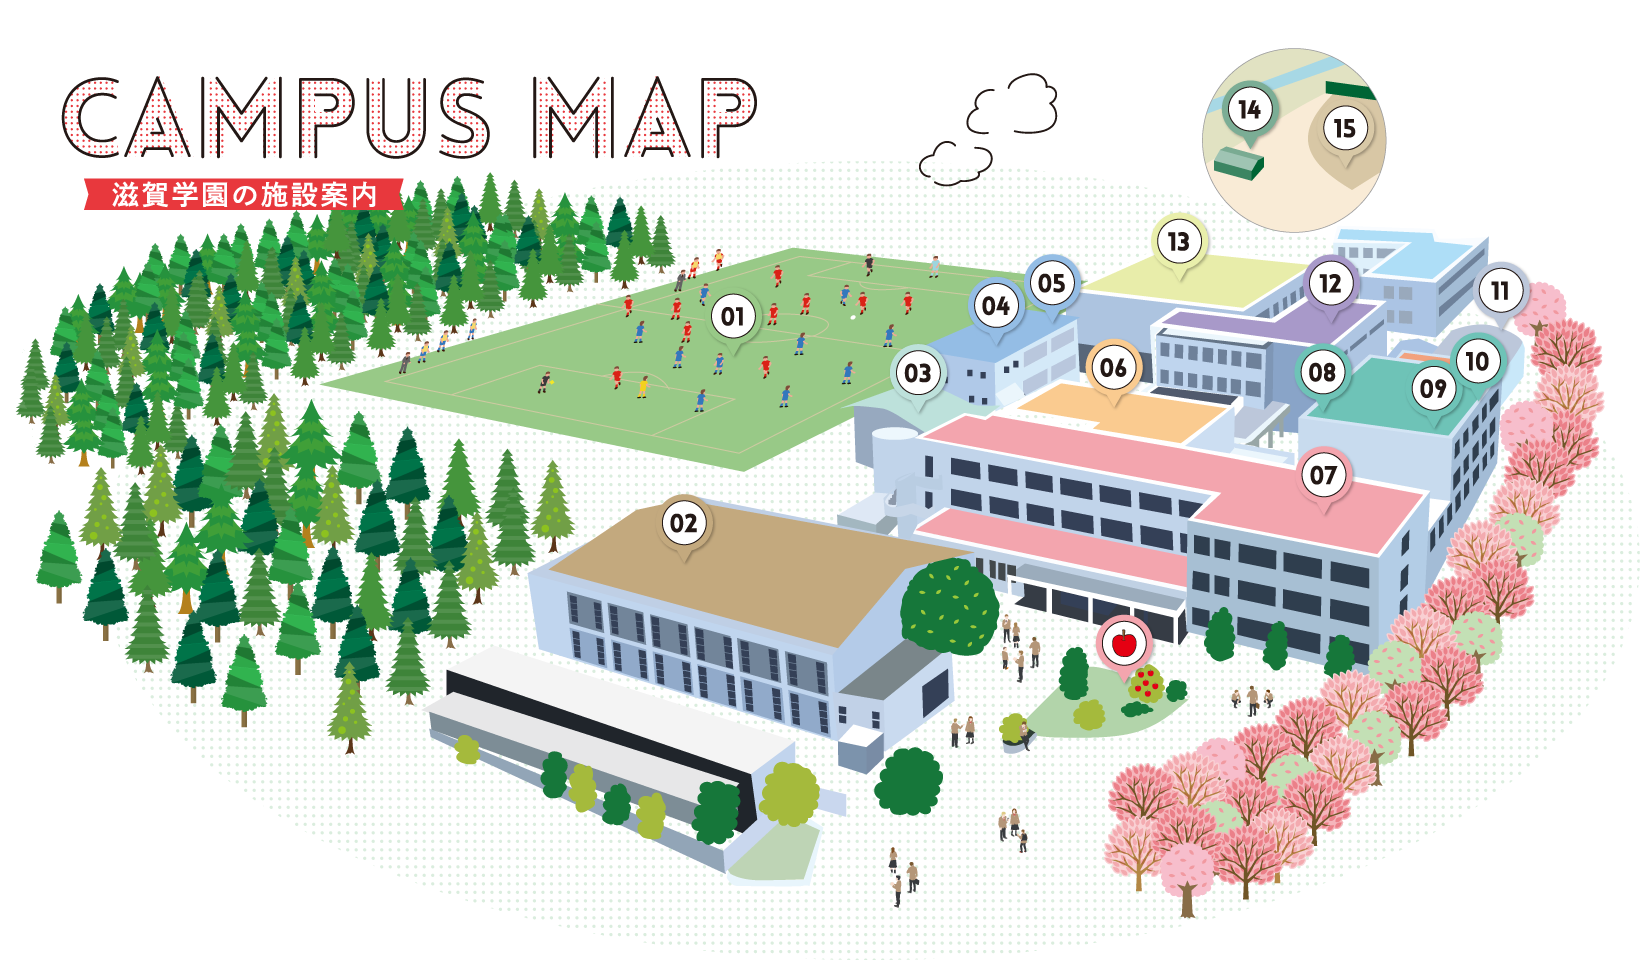 Campus Map 滋賀学園の施設案内